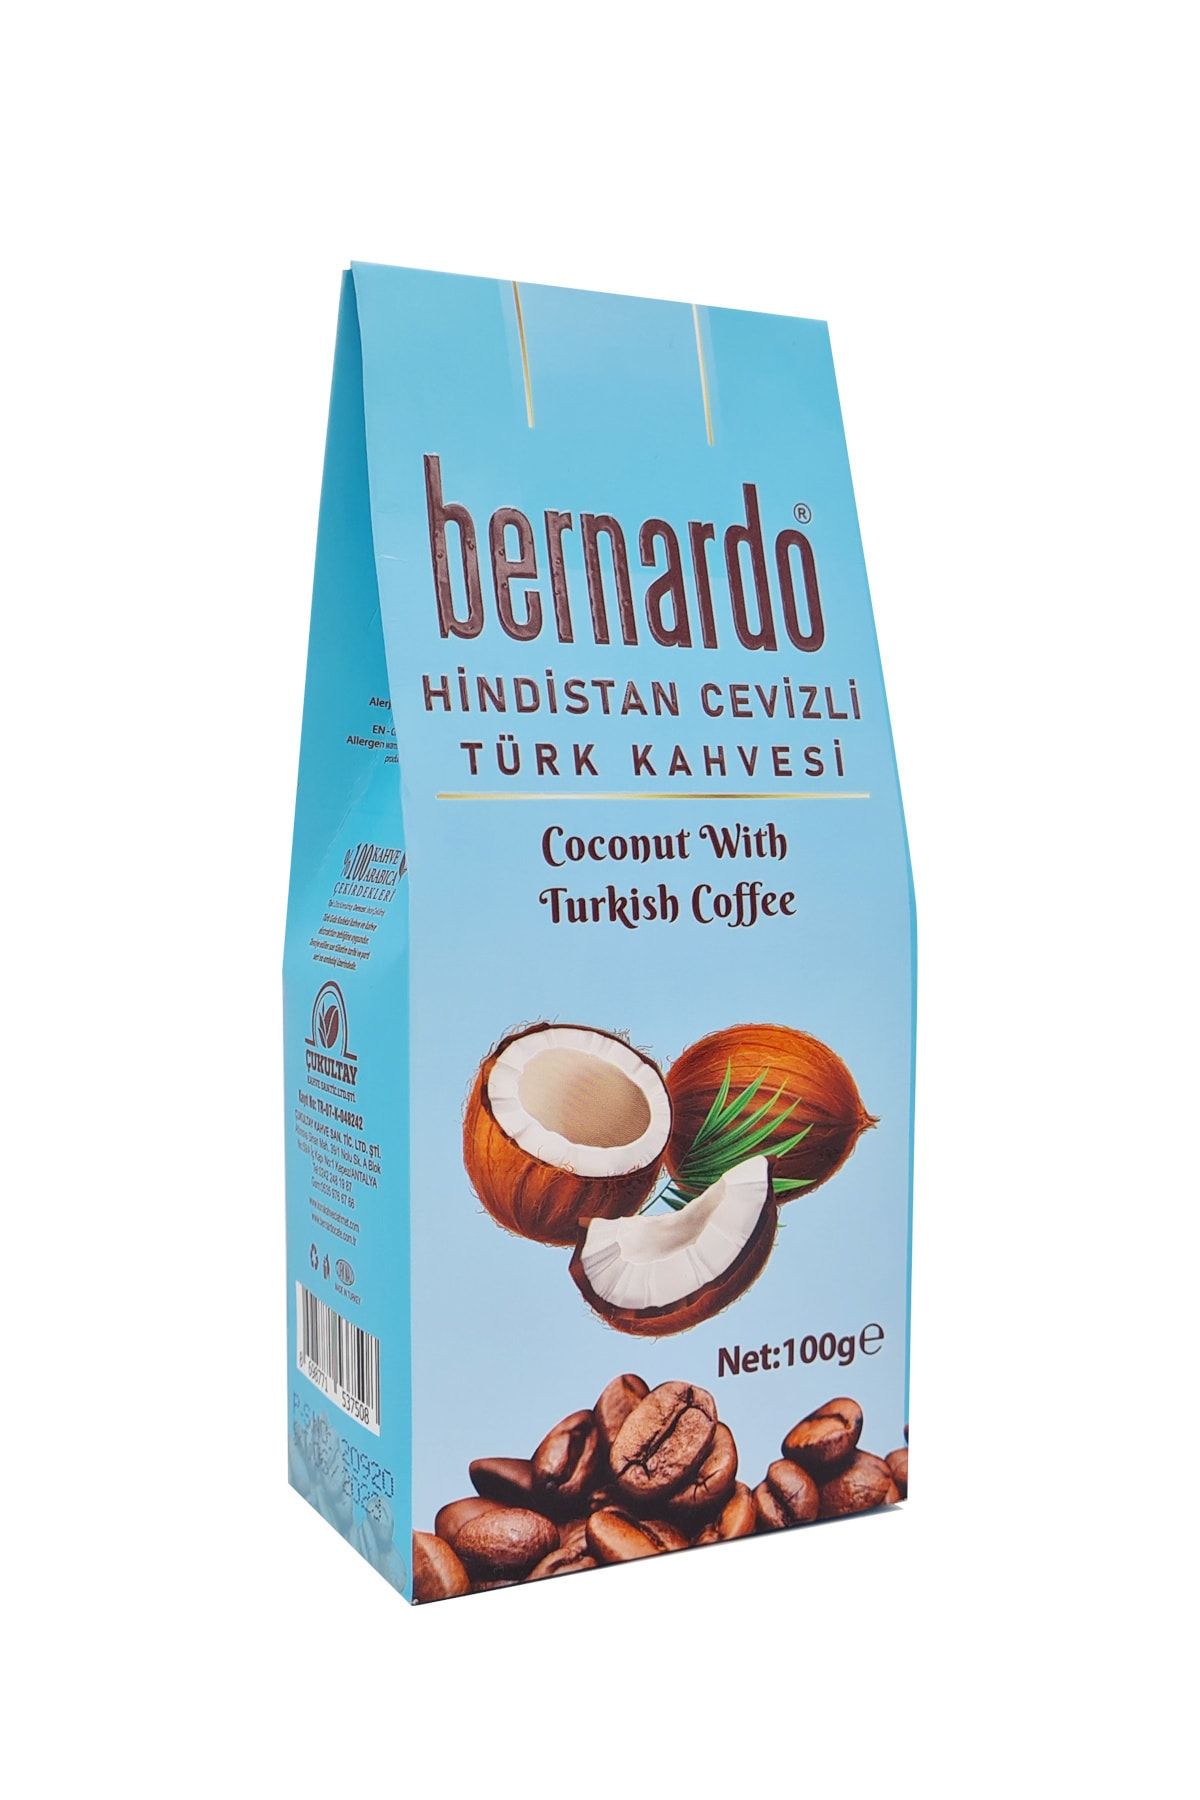 Bernardo Hindistan Cevizli Türk Kahvesi 100 Gr